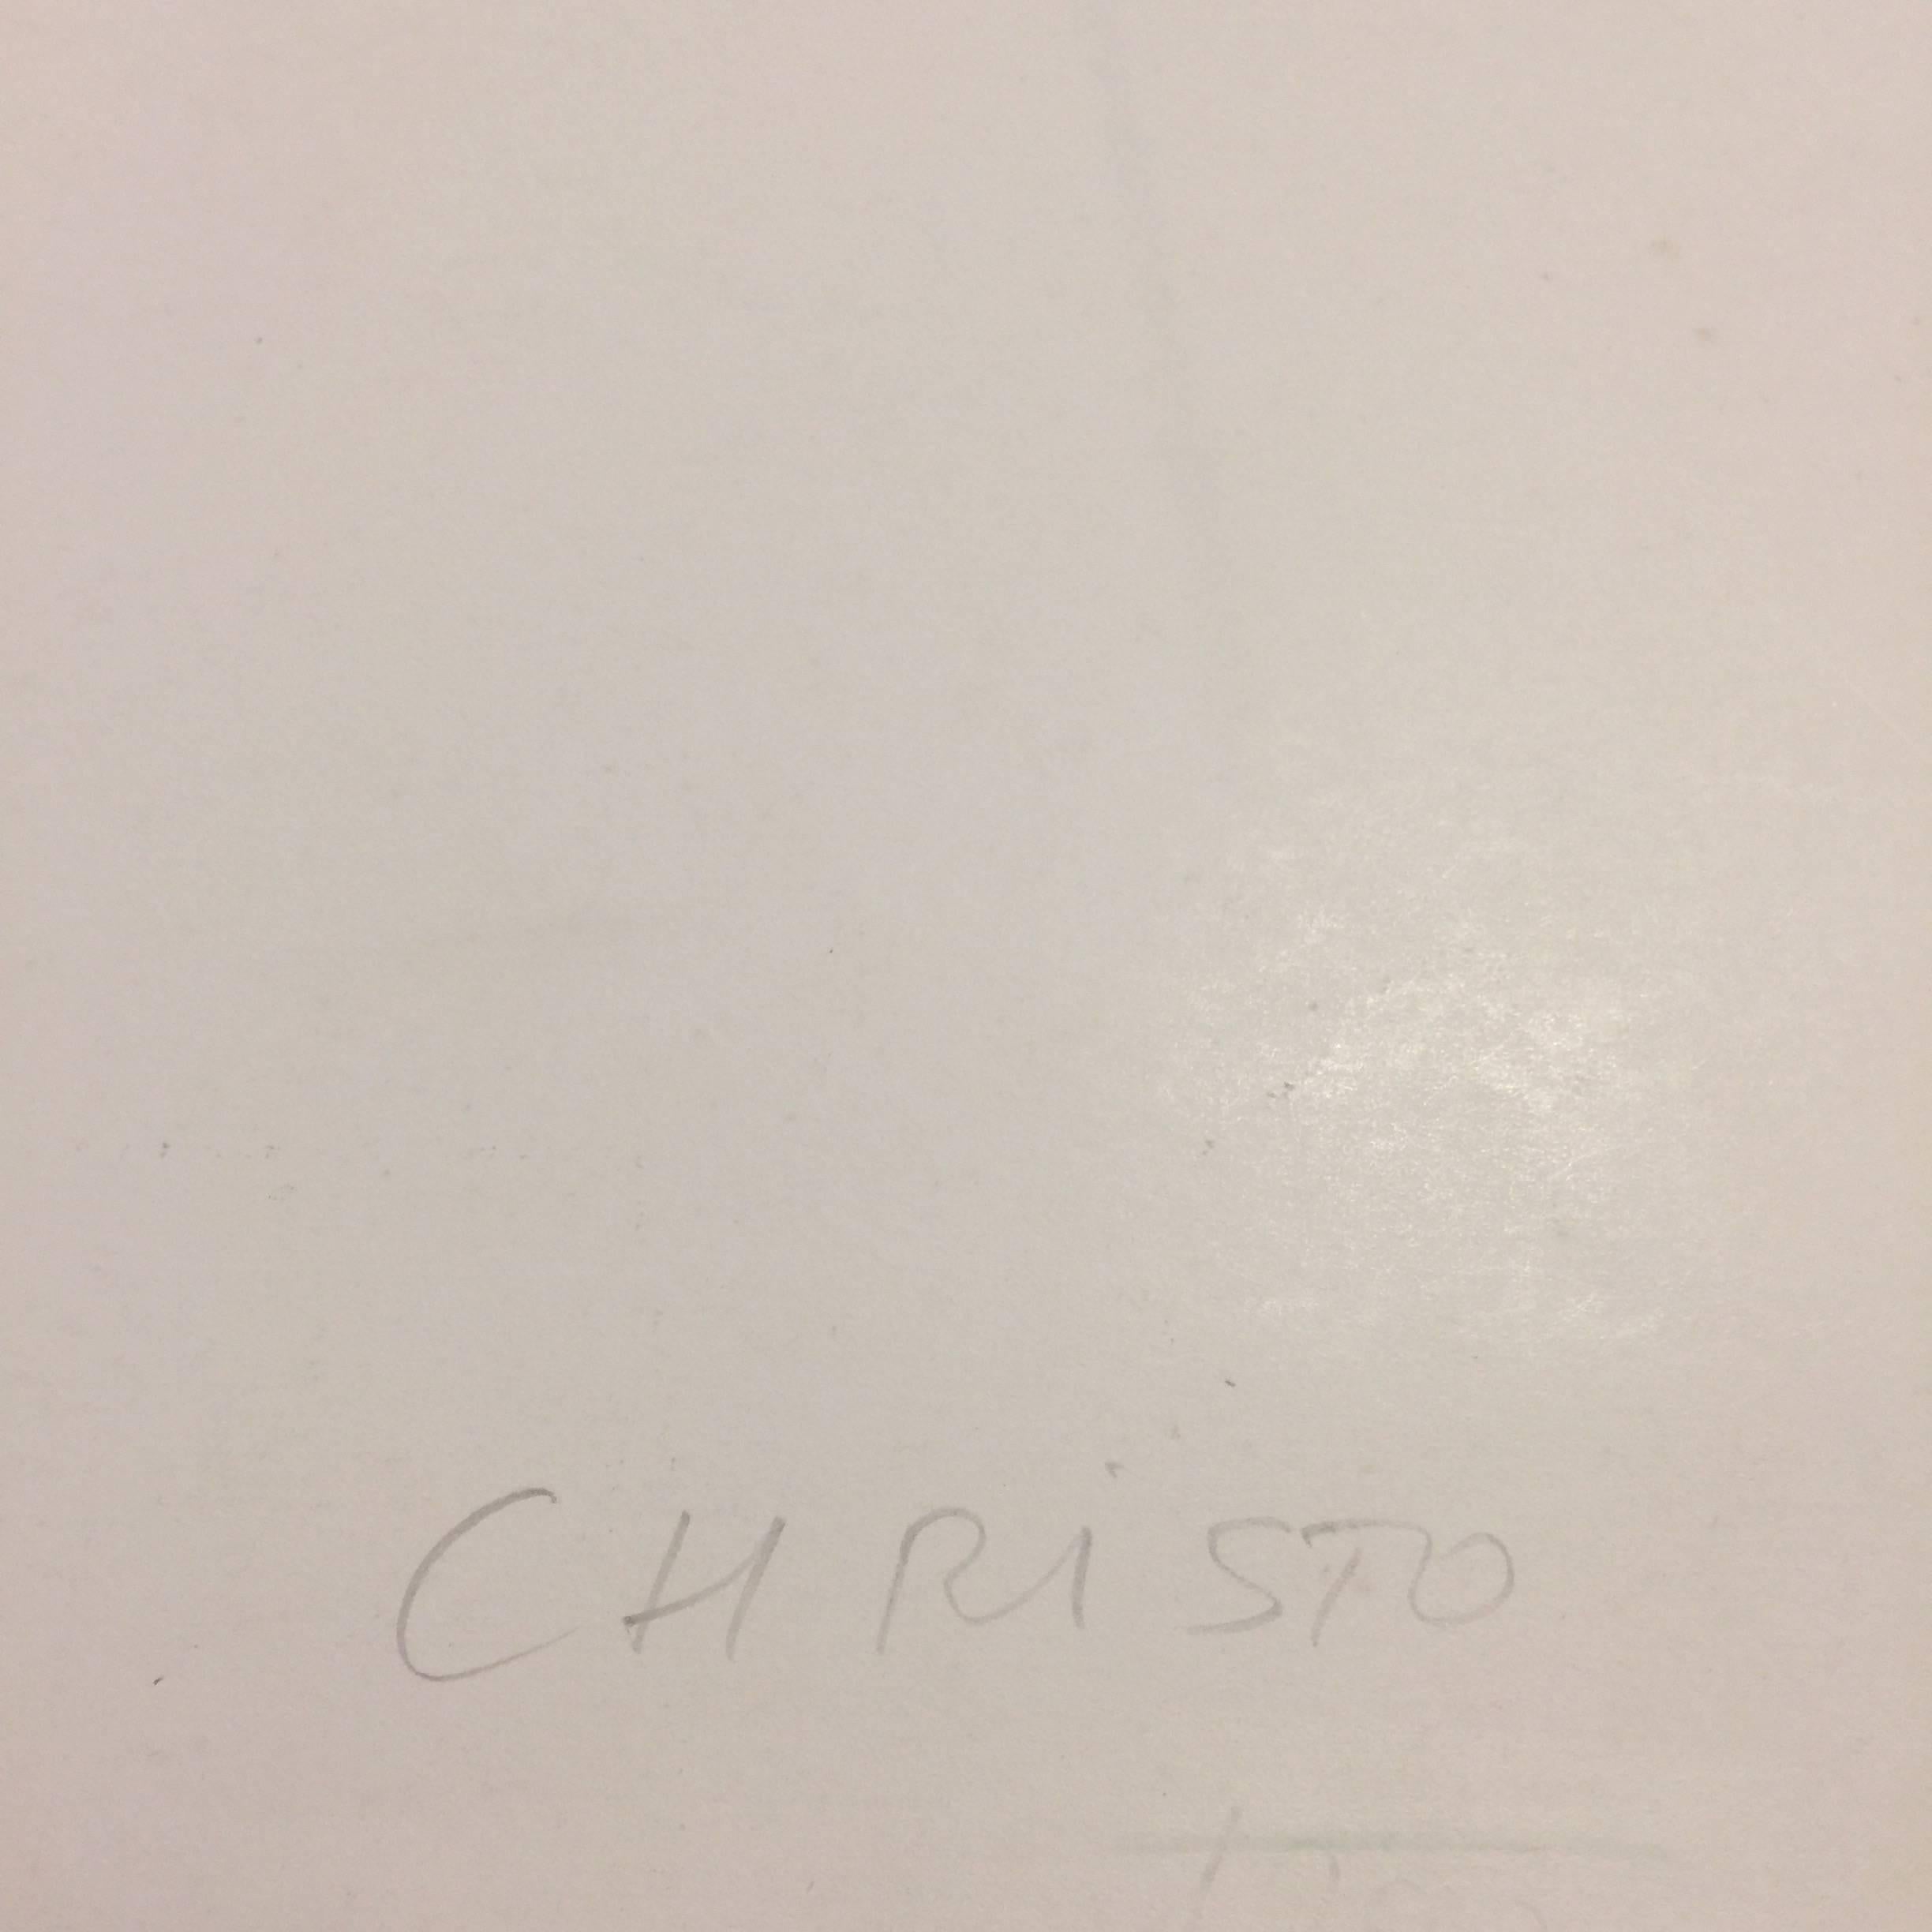 christo the wall